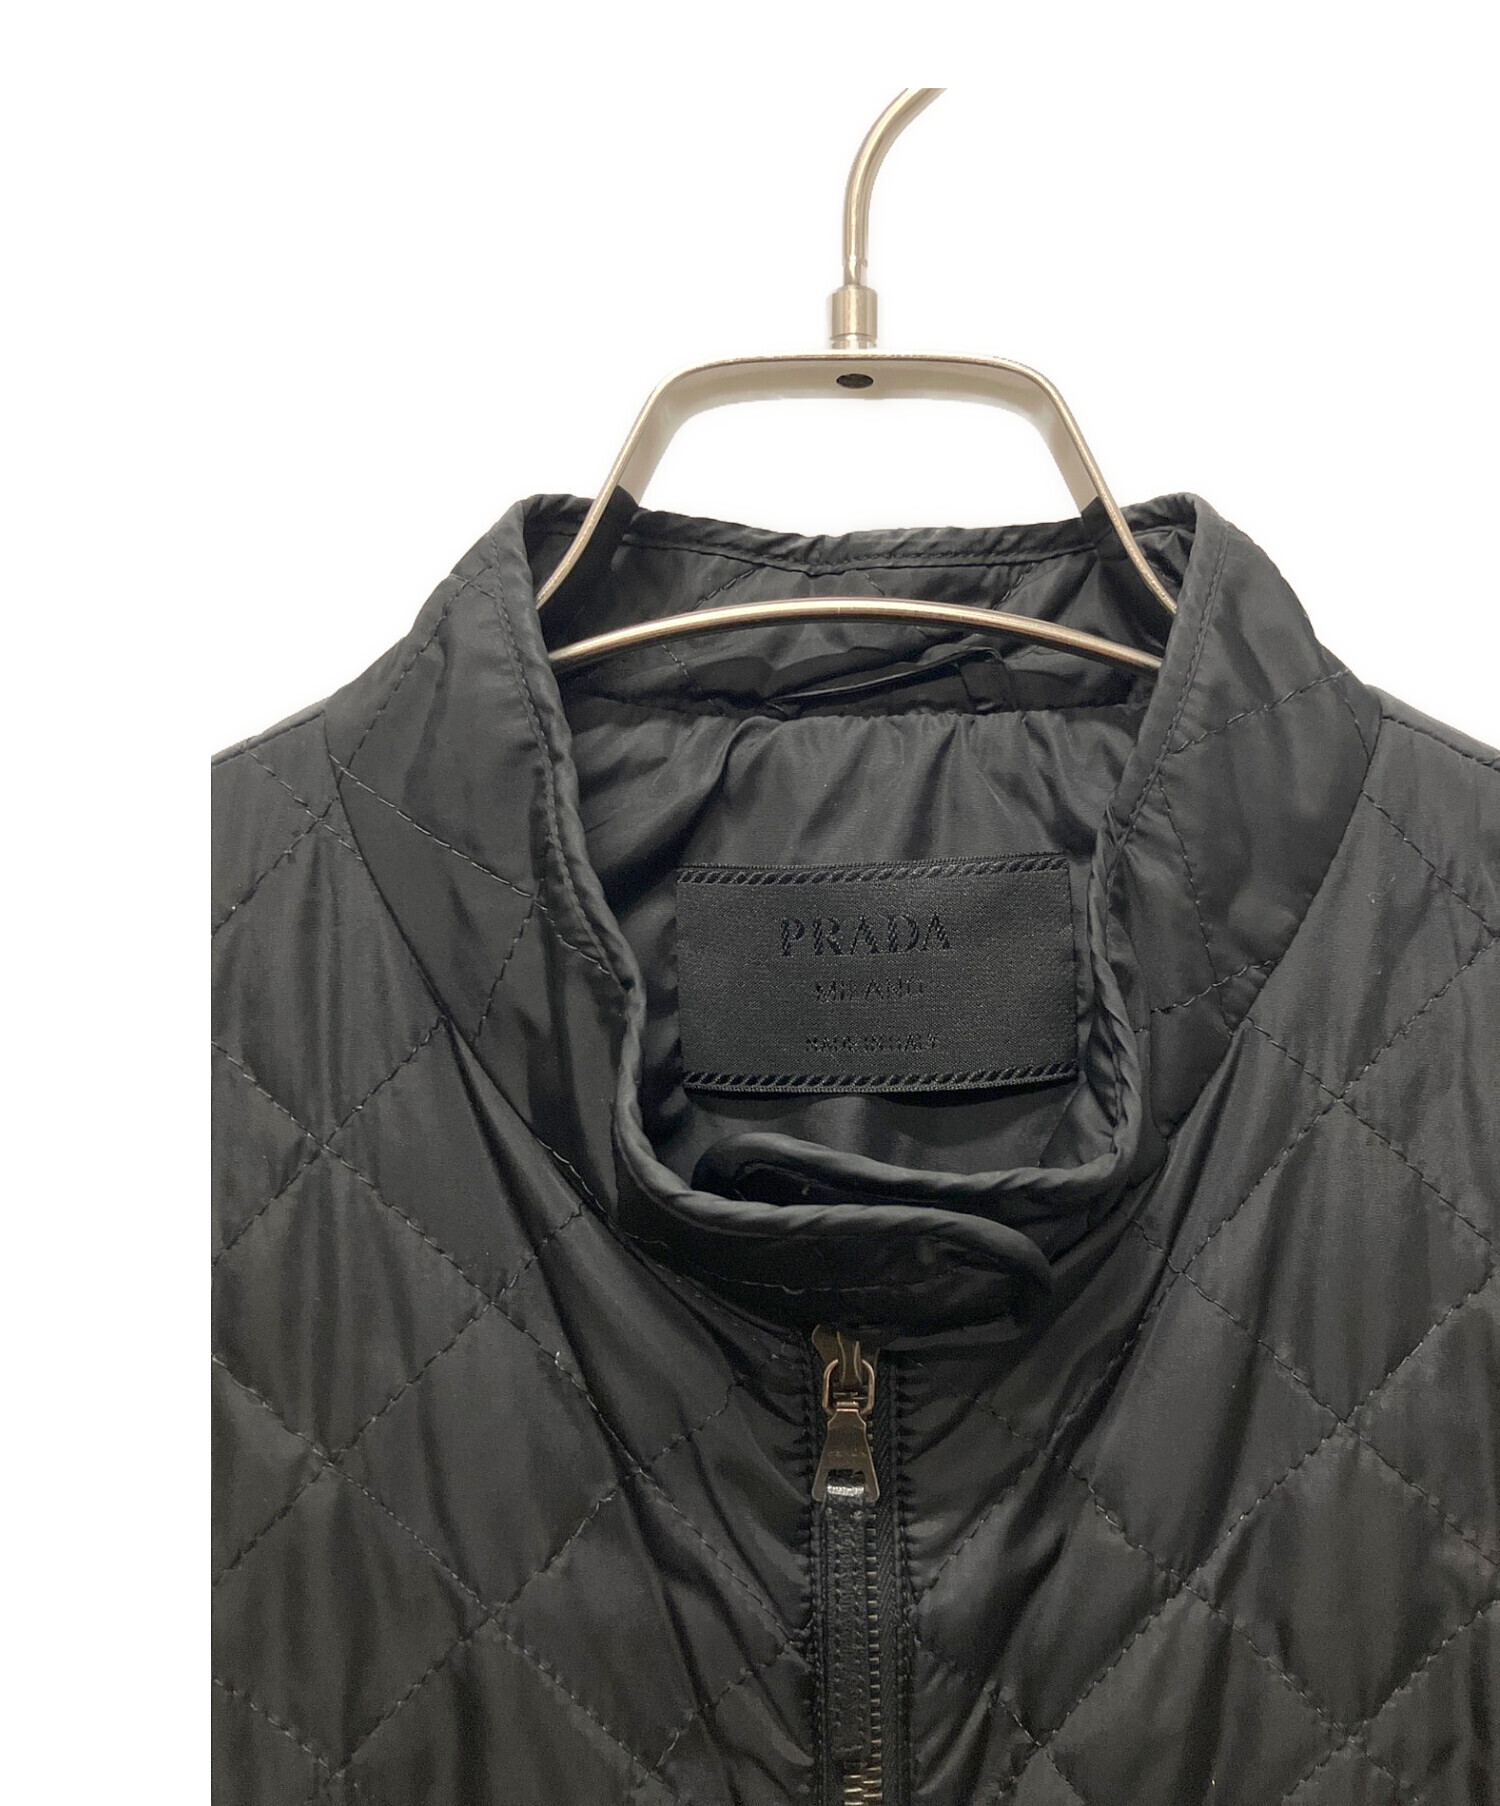 PRADA (プラダ) 三角プレートキルティングジャケット ブラック サイズ:44